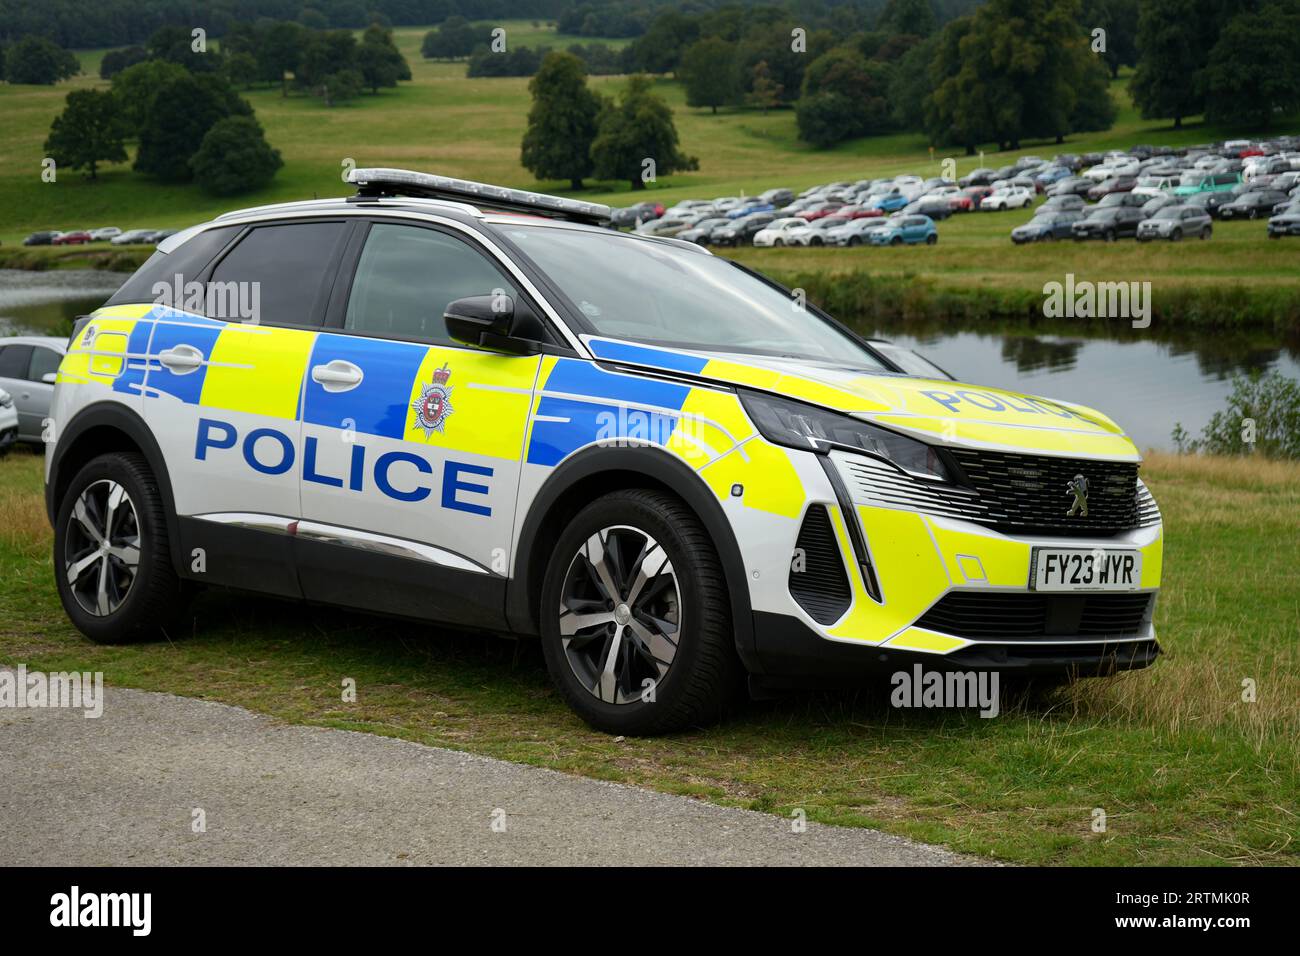 Derbyshire police 2023 Peugeot Patrol car dans un cadre rural. Derbyshire, Angleterre, Royaume-Uni. Banque D'Images